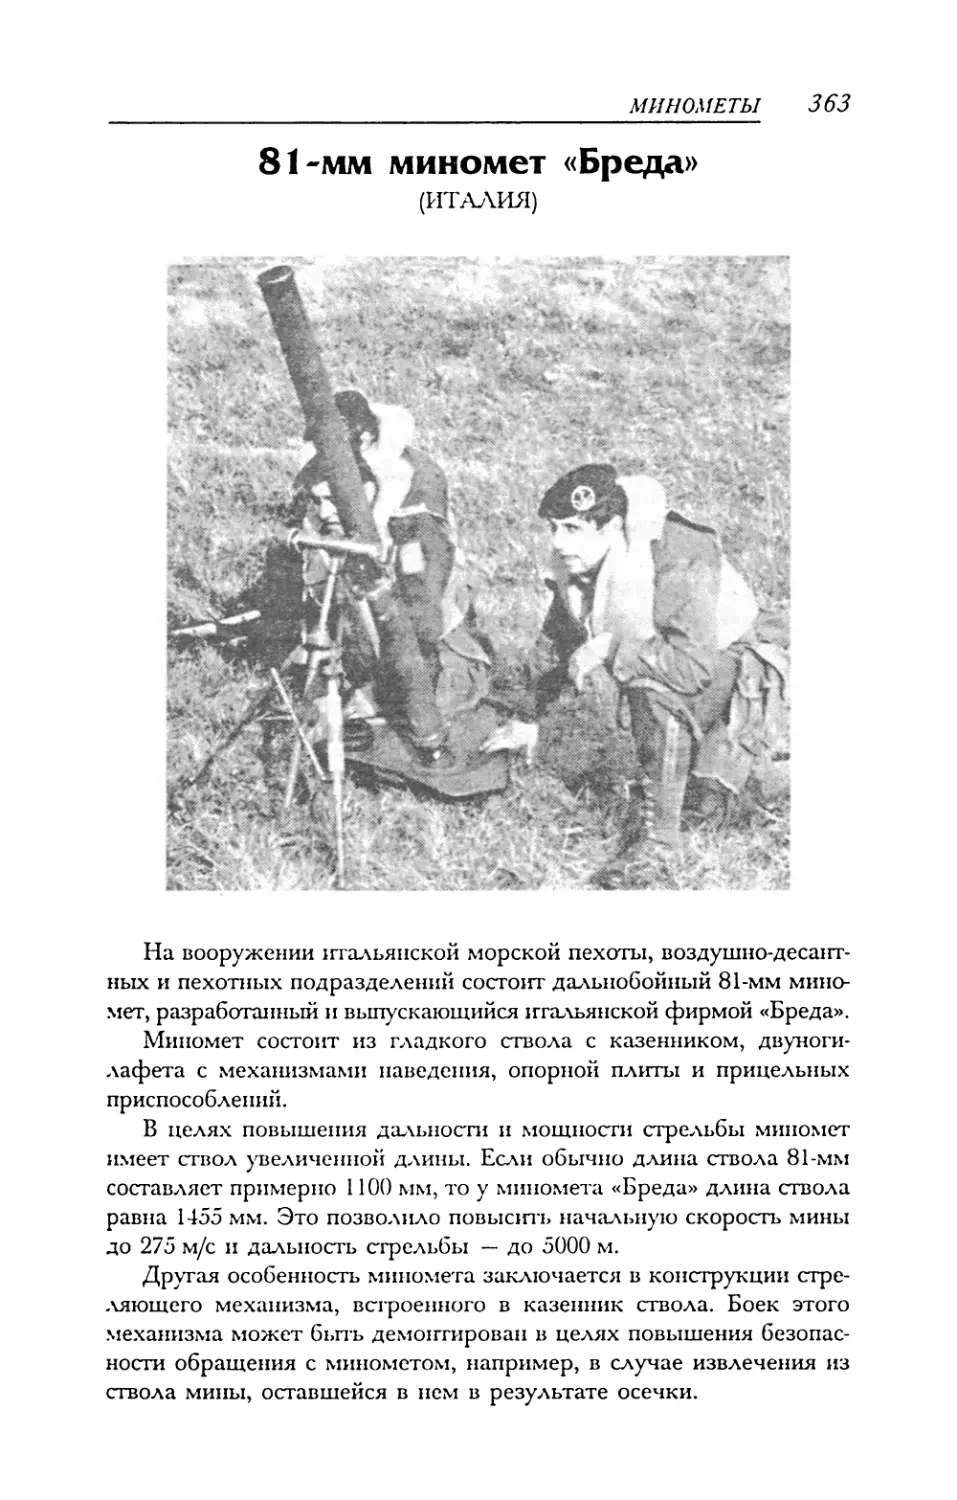 81-мм миномет «Бреда»